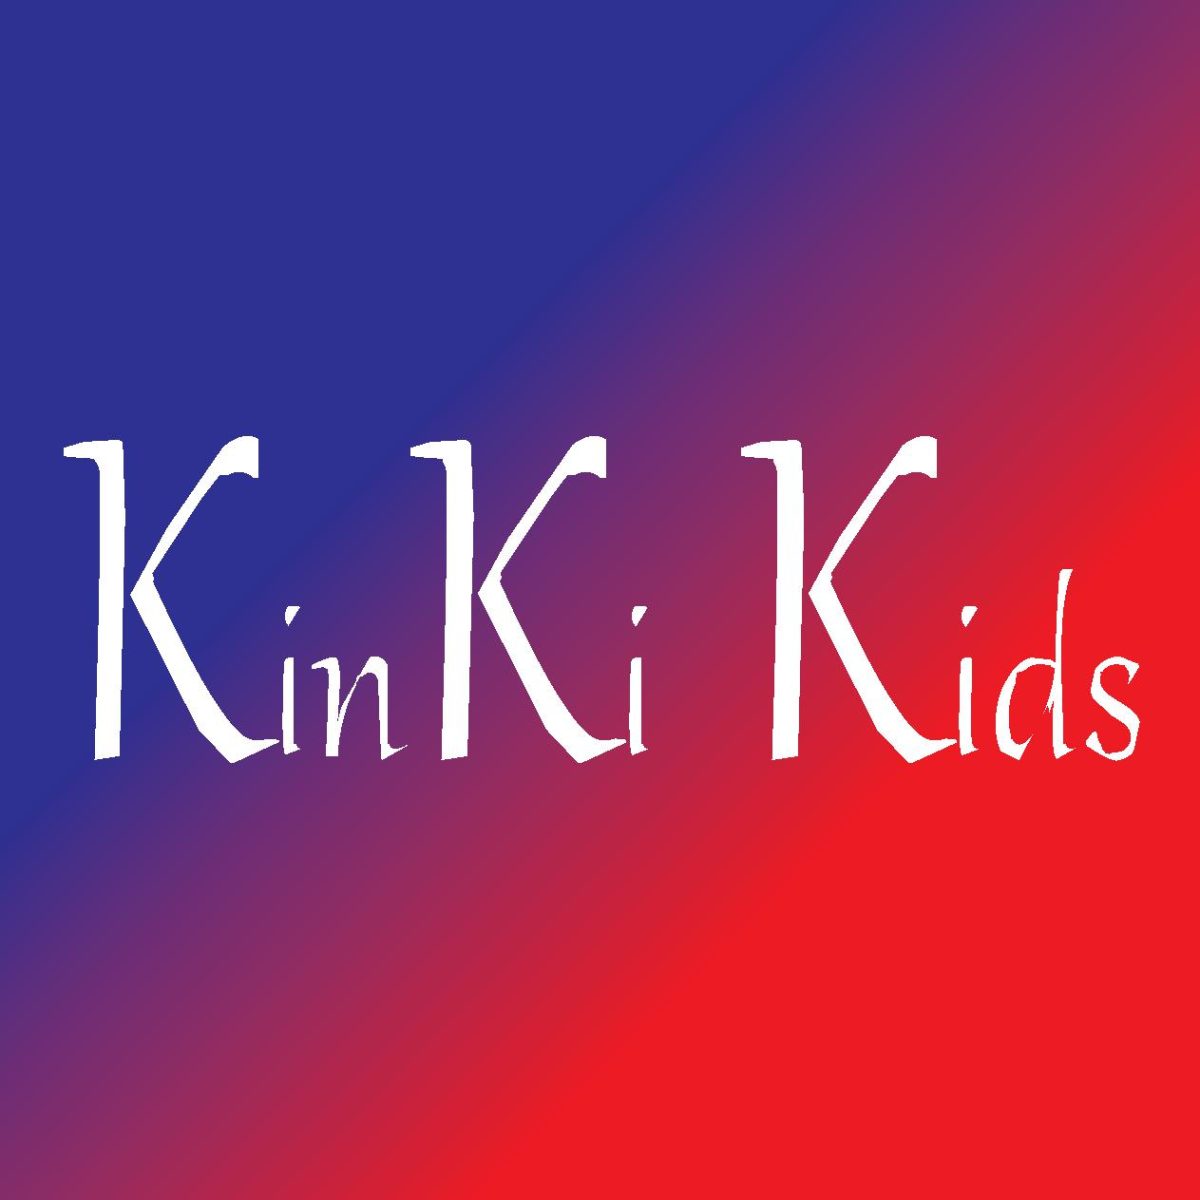 KinKi Kids 堂本剛 「初YouTube」で天竺鼠・川原克己が尋ねた「どうなの?郵便局は行っているの?」